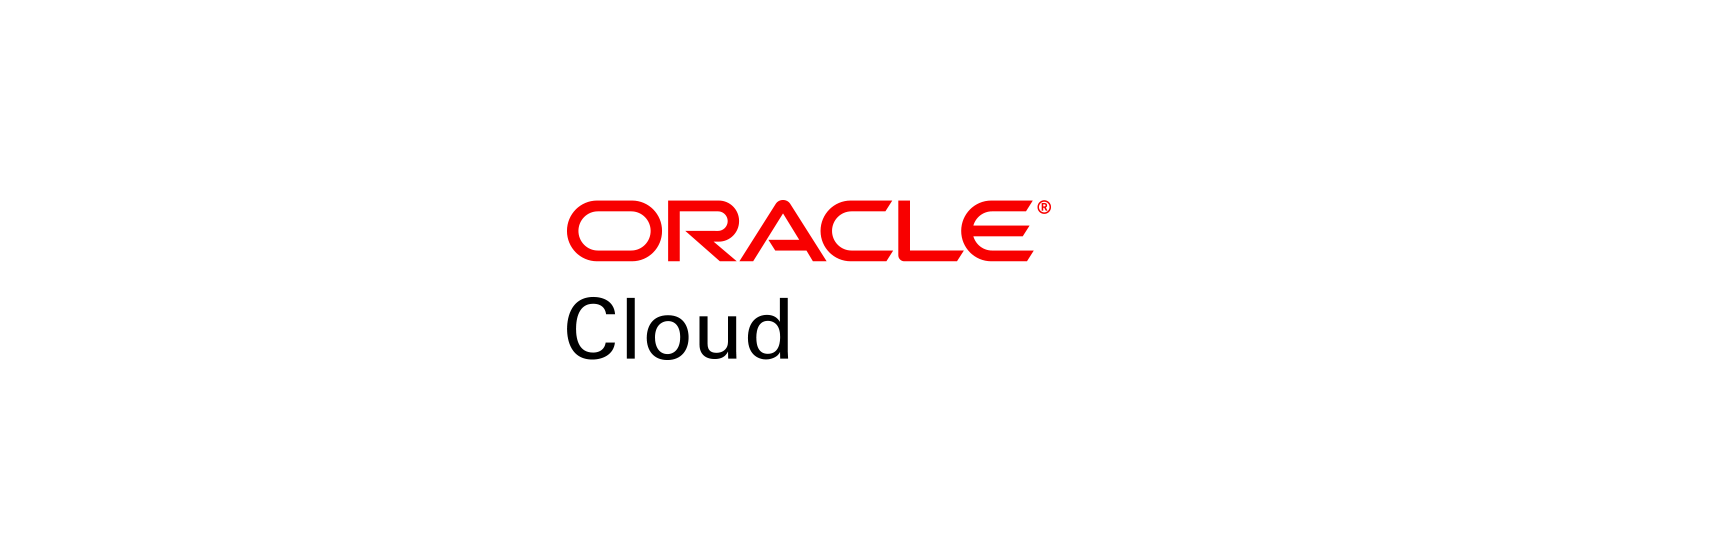 Oracle Cloud Logo - Oracle Brand | Logos